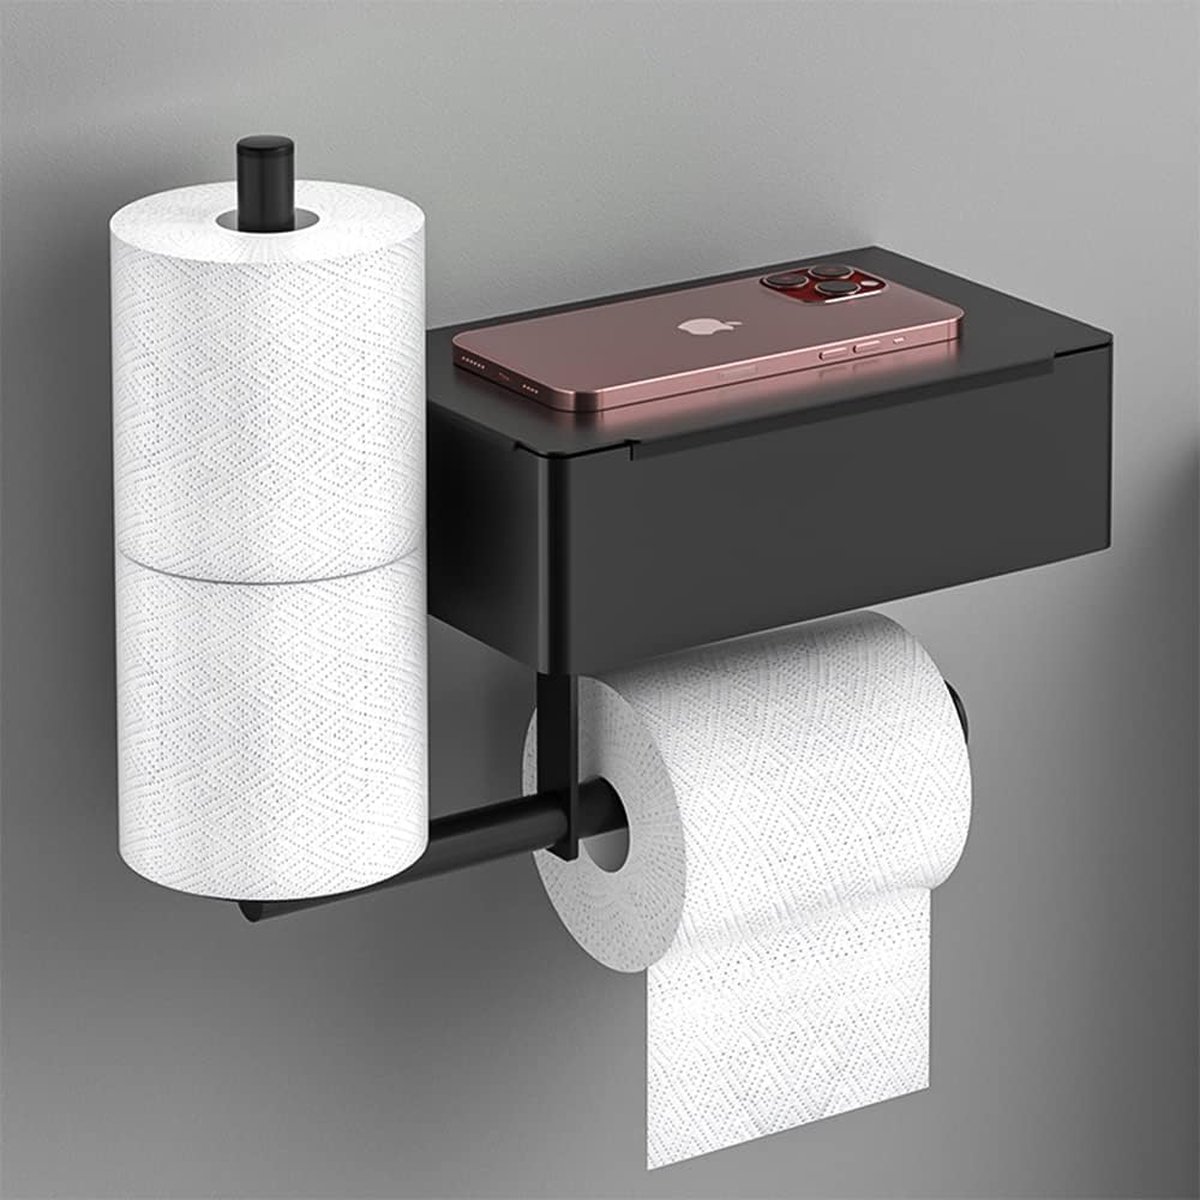 VDN Stainless porte-rouleau de papier toilette noir - Porte-rouleau de  rechange - Acier inoxydable - Suspendu